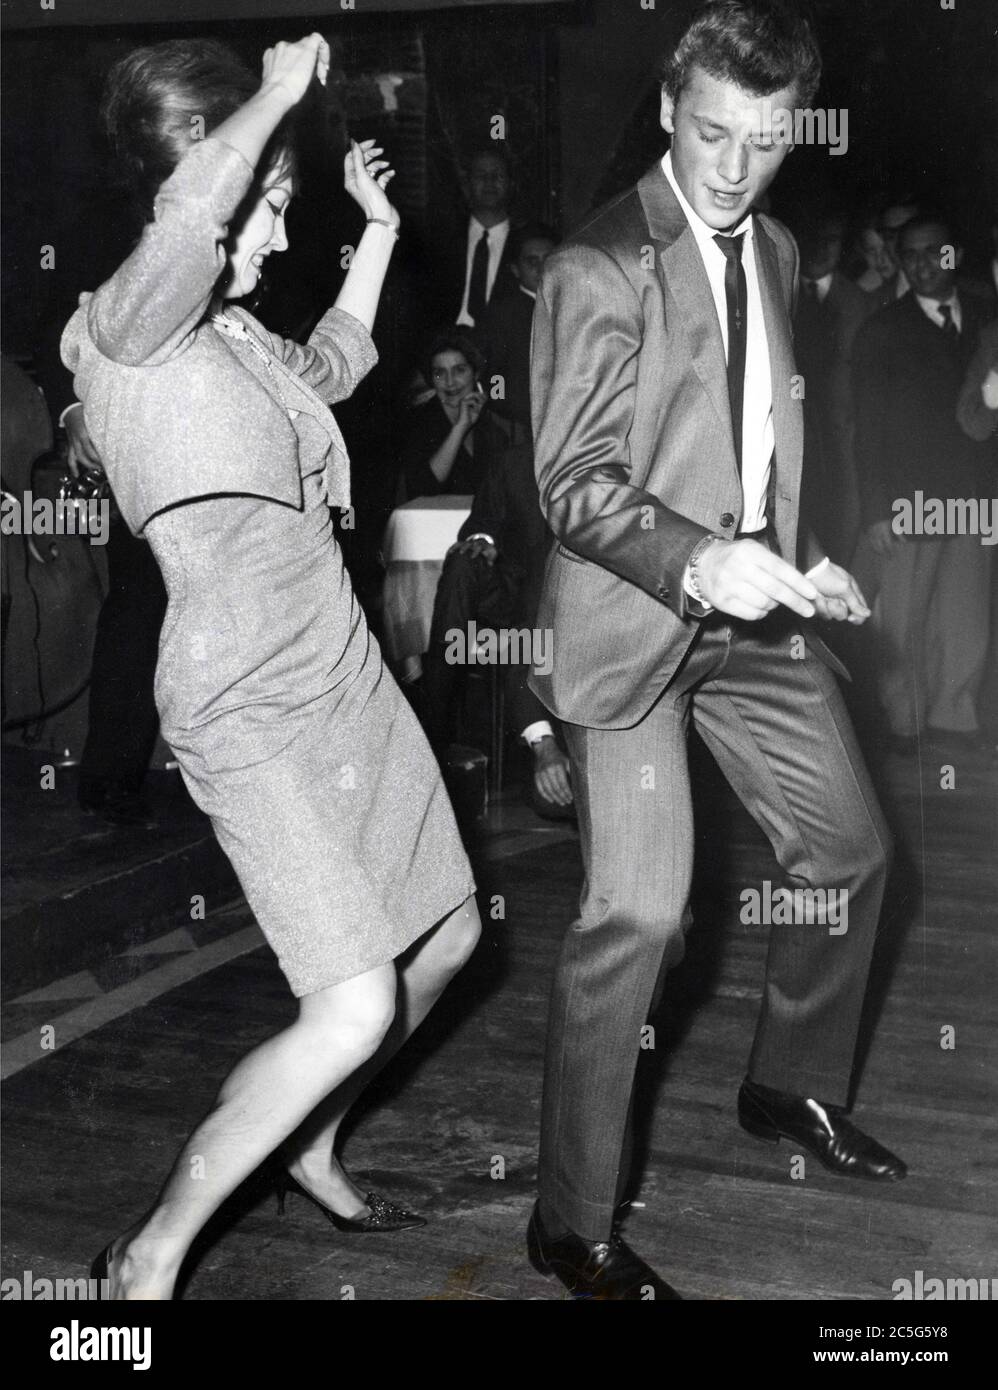 17 novembre 1962 - Roma, Italia - JOHNNY HALLYDAY balla il ''Twist'' con VALERIE CAMILLE in un night club. (Credit Image: © Keystone Press Agency/Keystone USA via ZUMAPRESS.com) Foto Stock